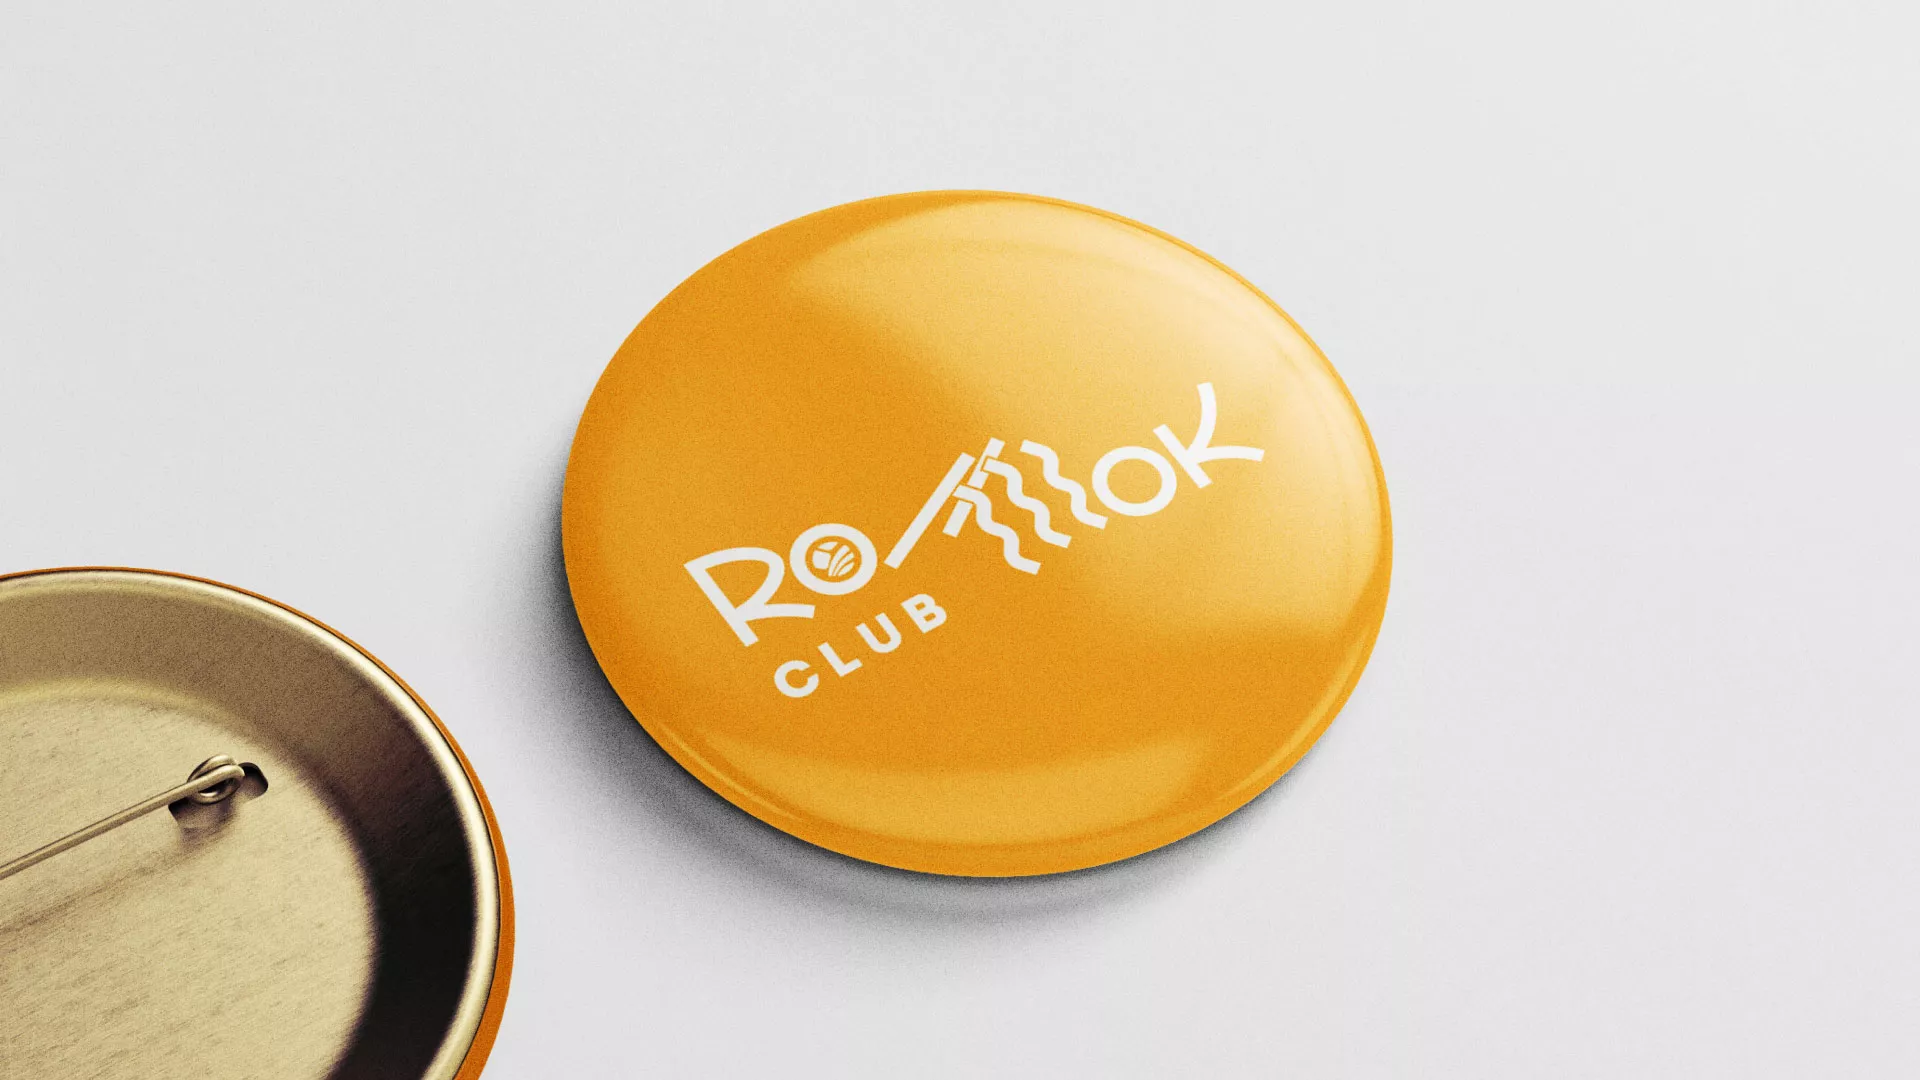 Создание логотипа суши-бара «Roll Wok Club» в Вельске